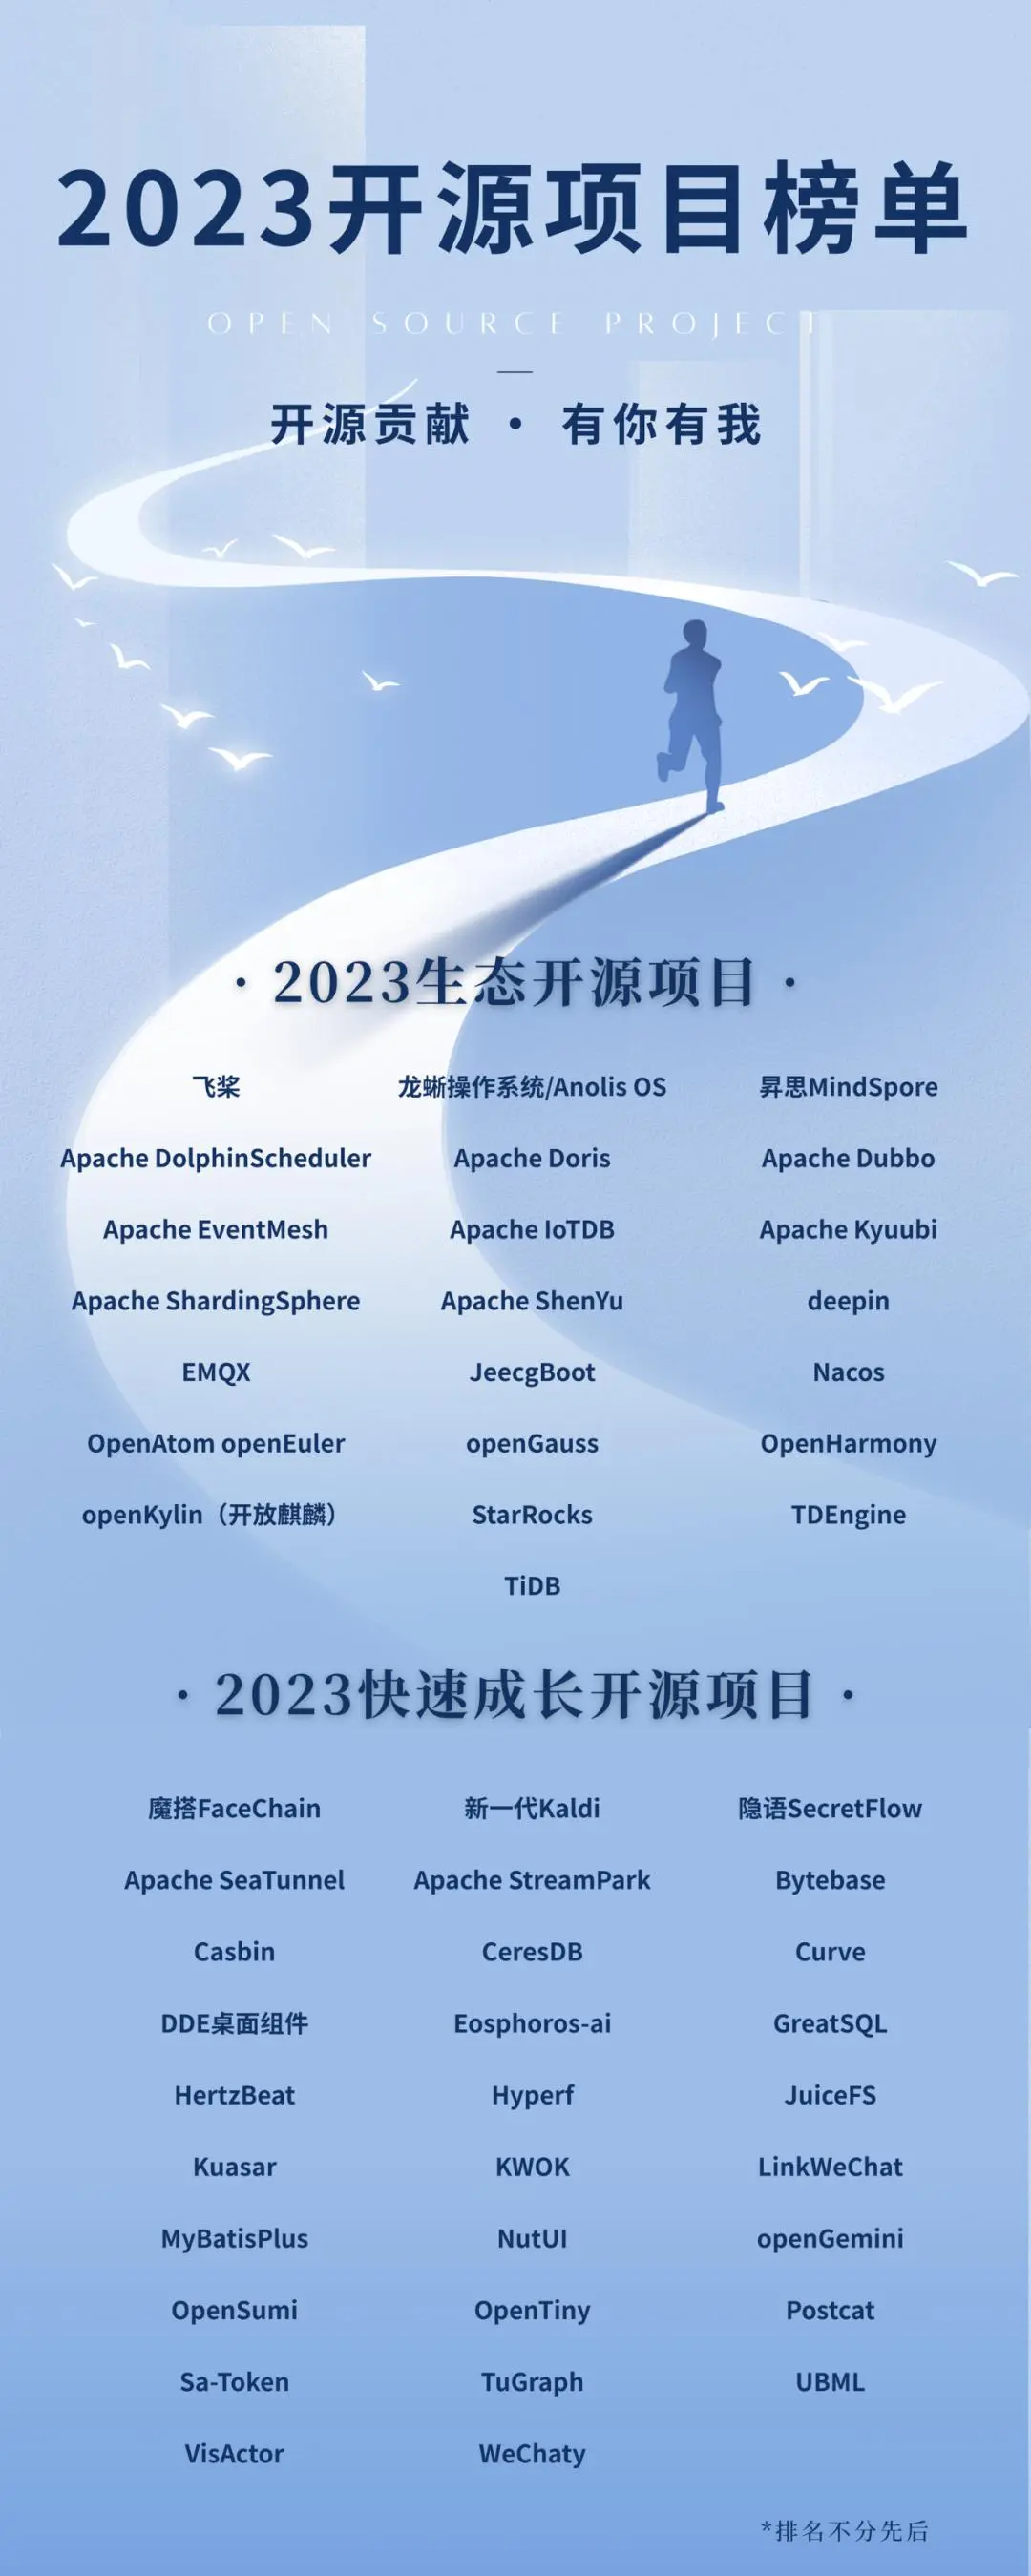 2023优秀开源项目获选榜名单(开放原子开源基金会)｜JeecgBoot 成功入选